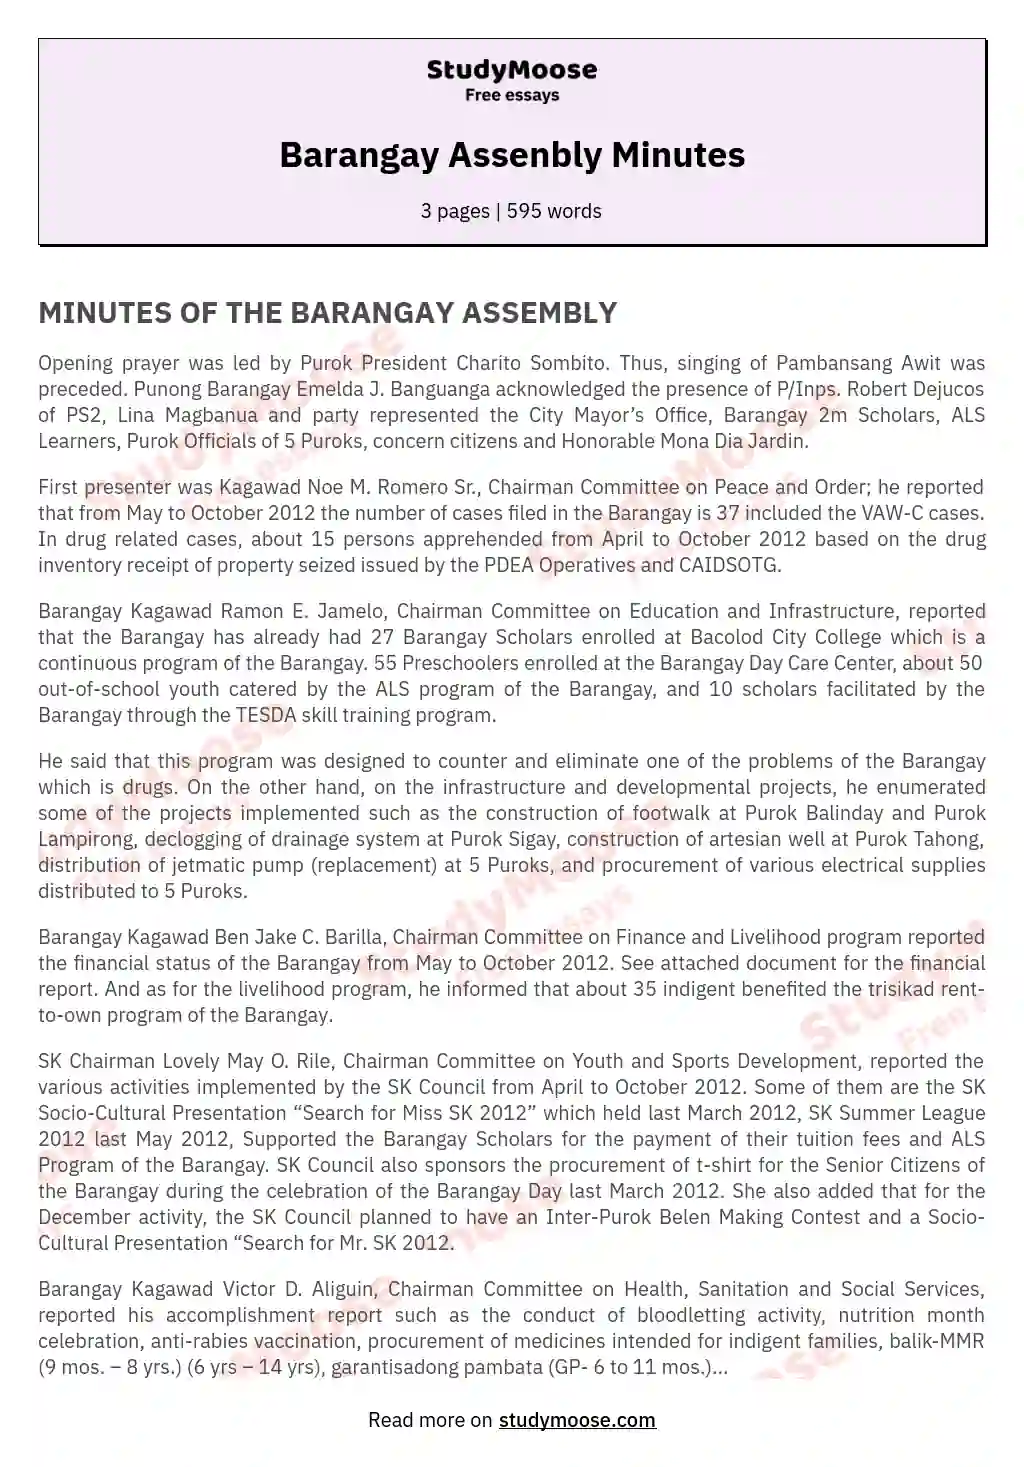 Barangay Assenbly Minutes essay